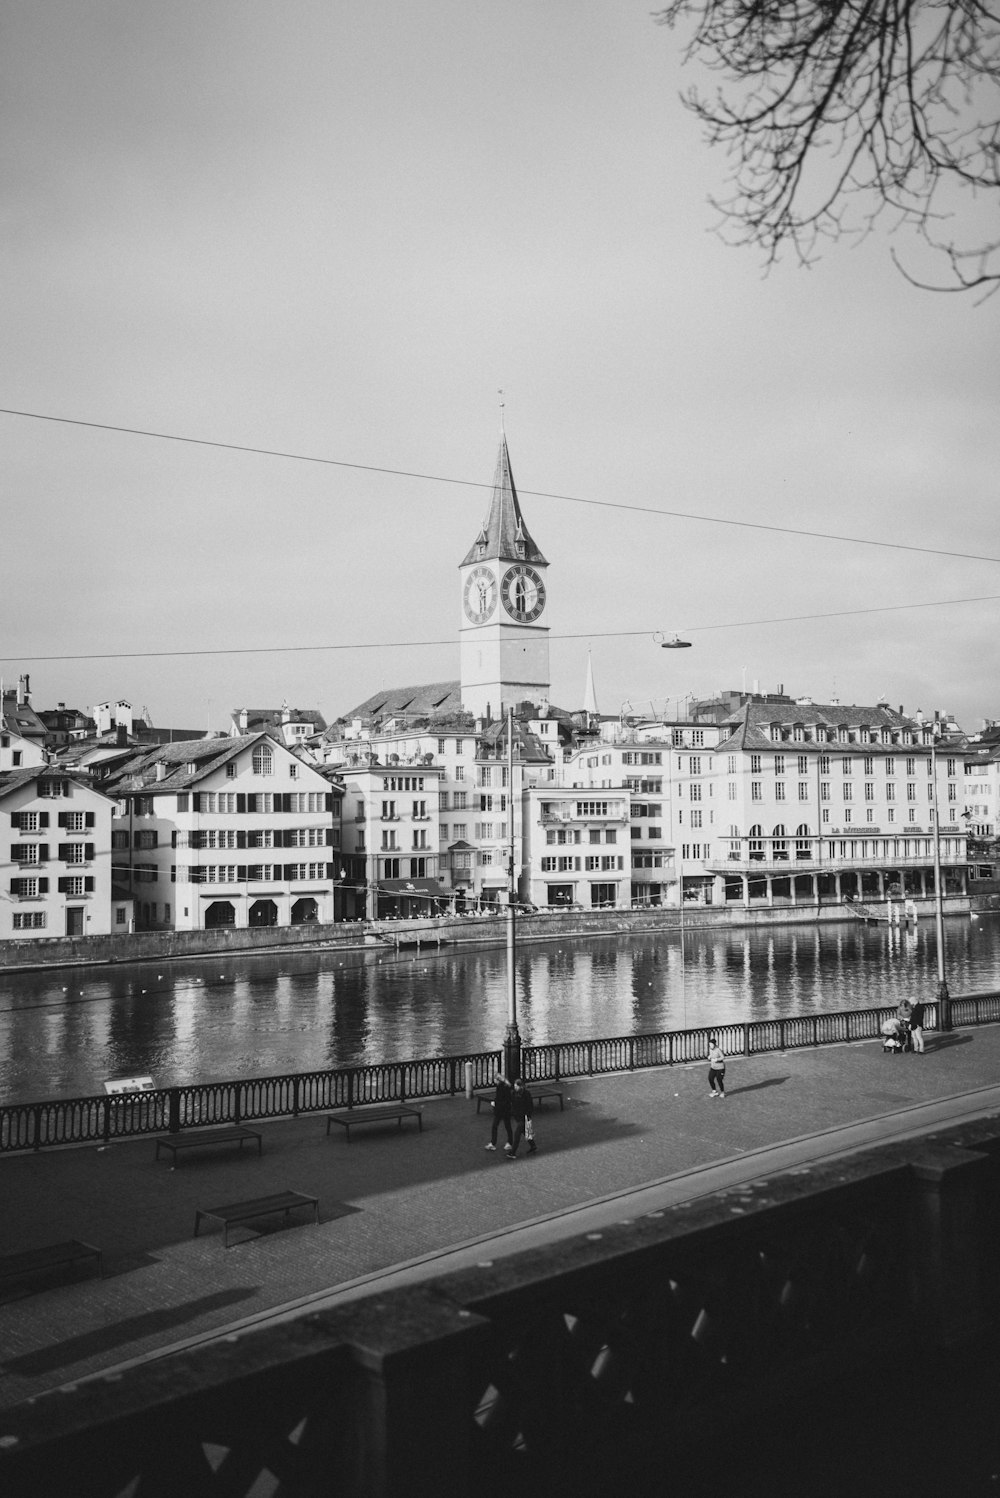 Una foto in bianco e nero di una città con una torre dell'orologio